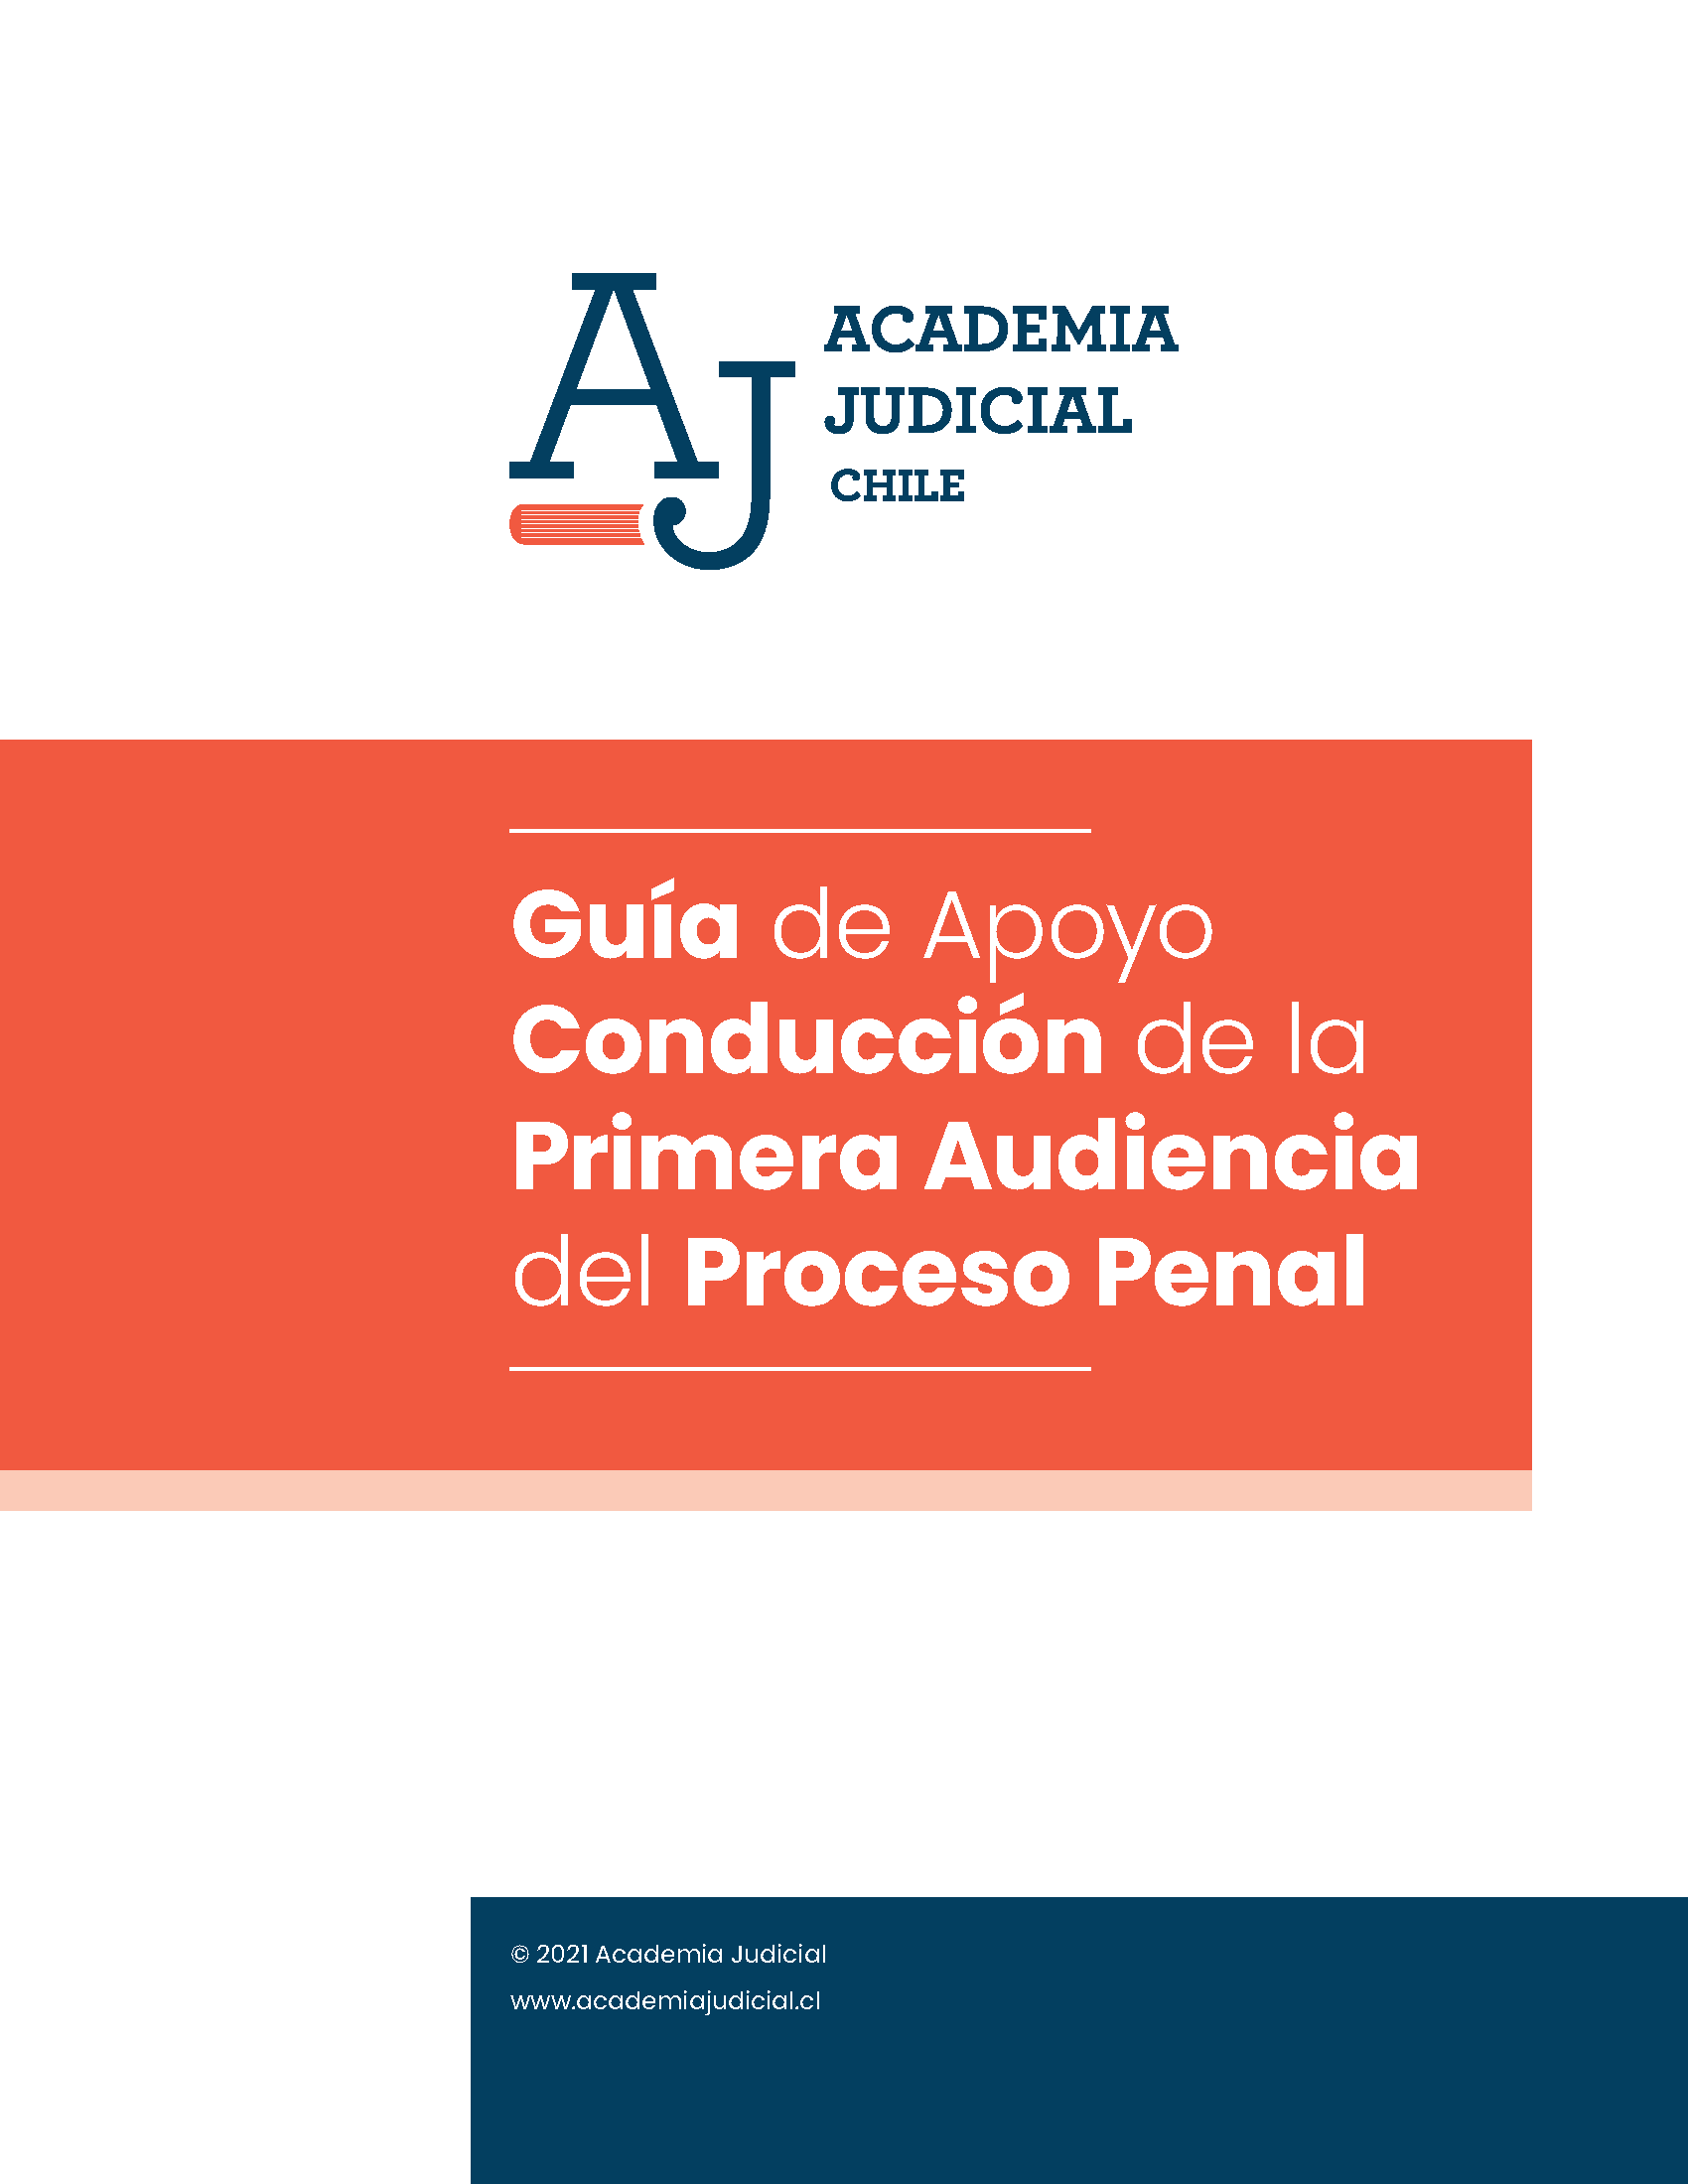 Guía para la Conducción de la Primera Audiencia del Proceso Penal